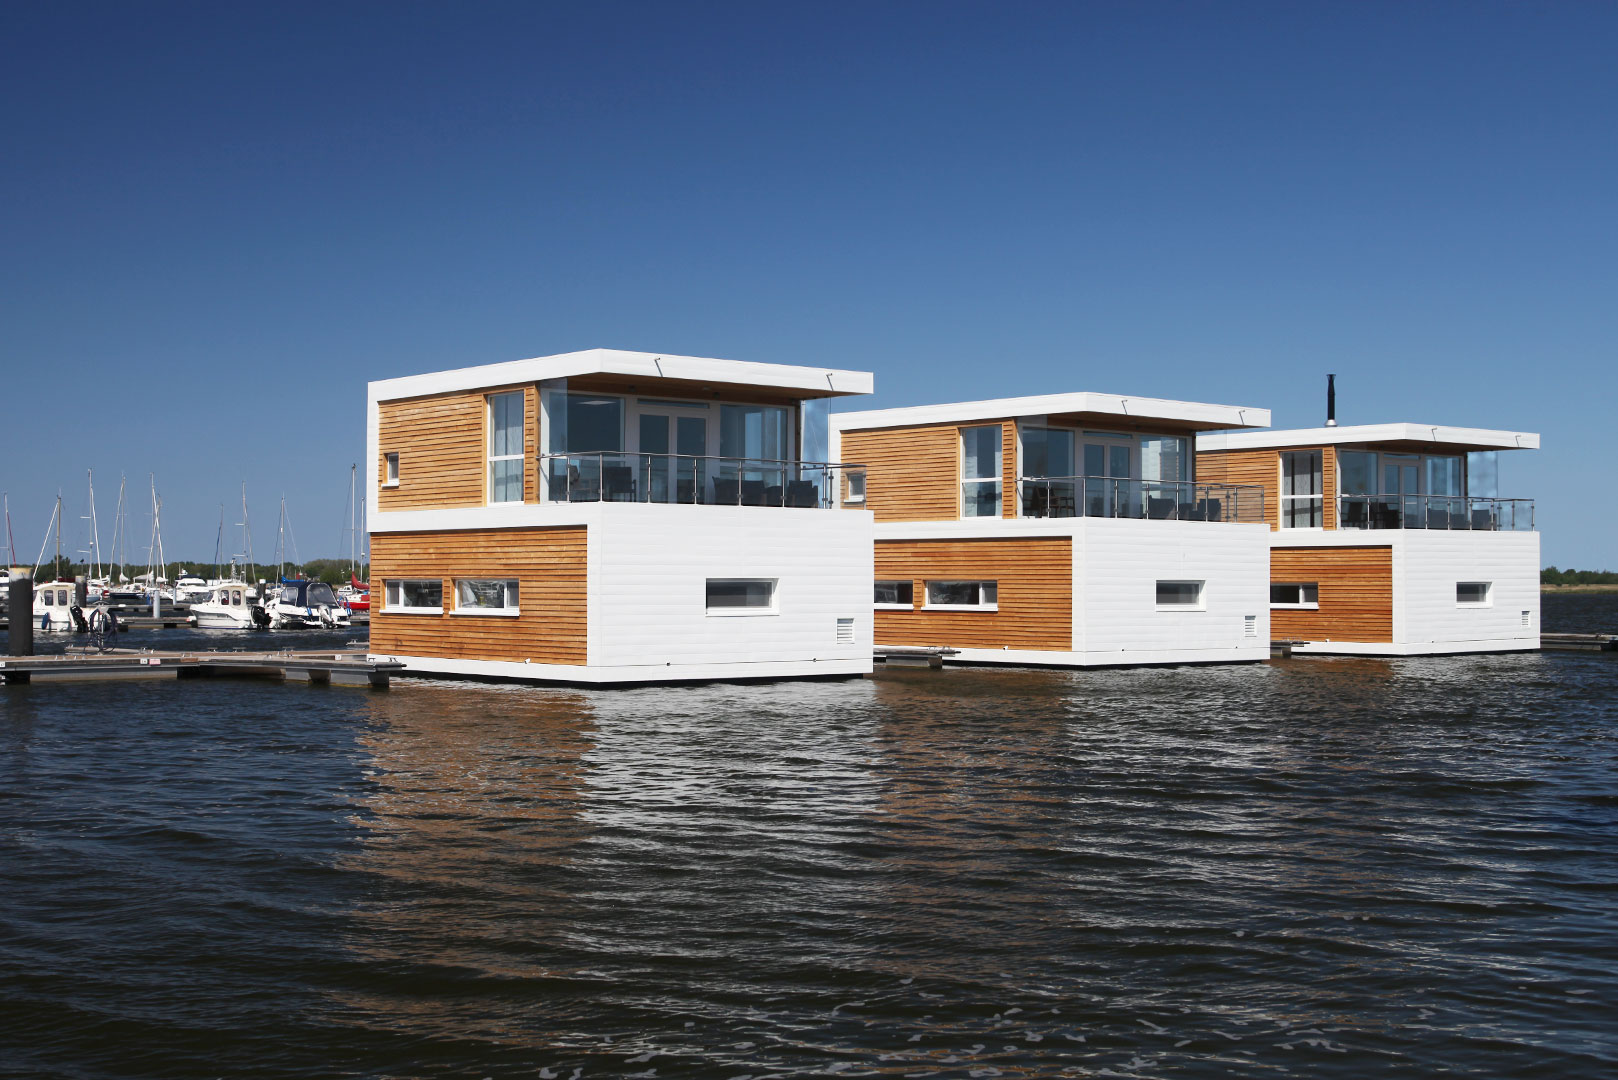 Schwimmende Häuser floating 100 mieten und kaufen - Ostsee ...